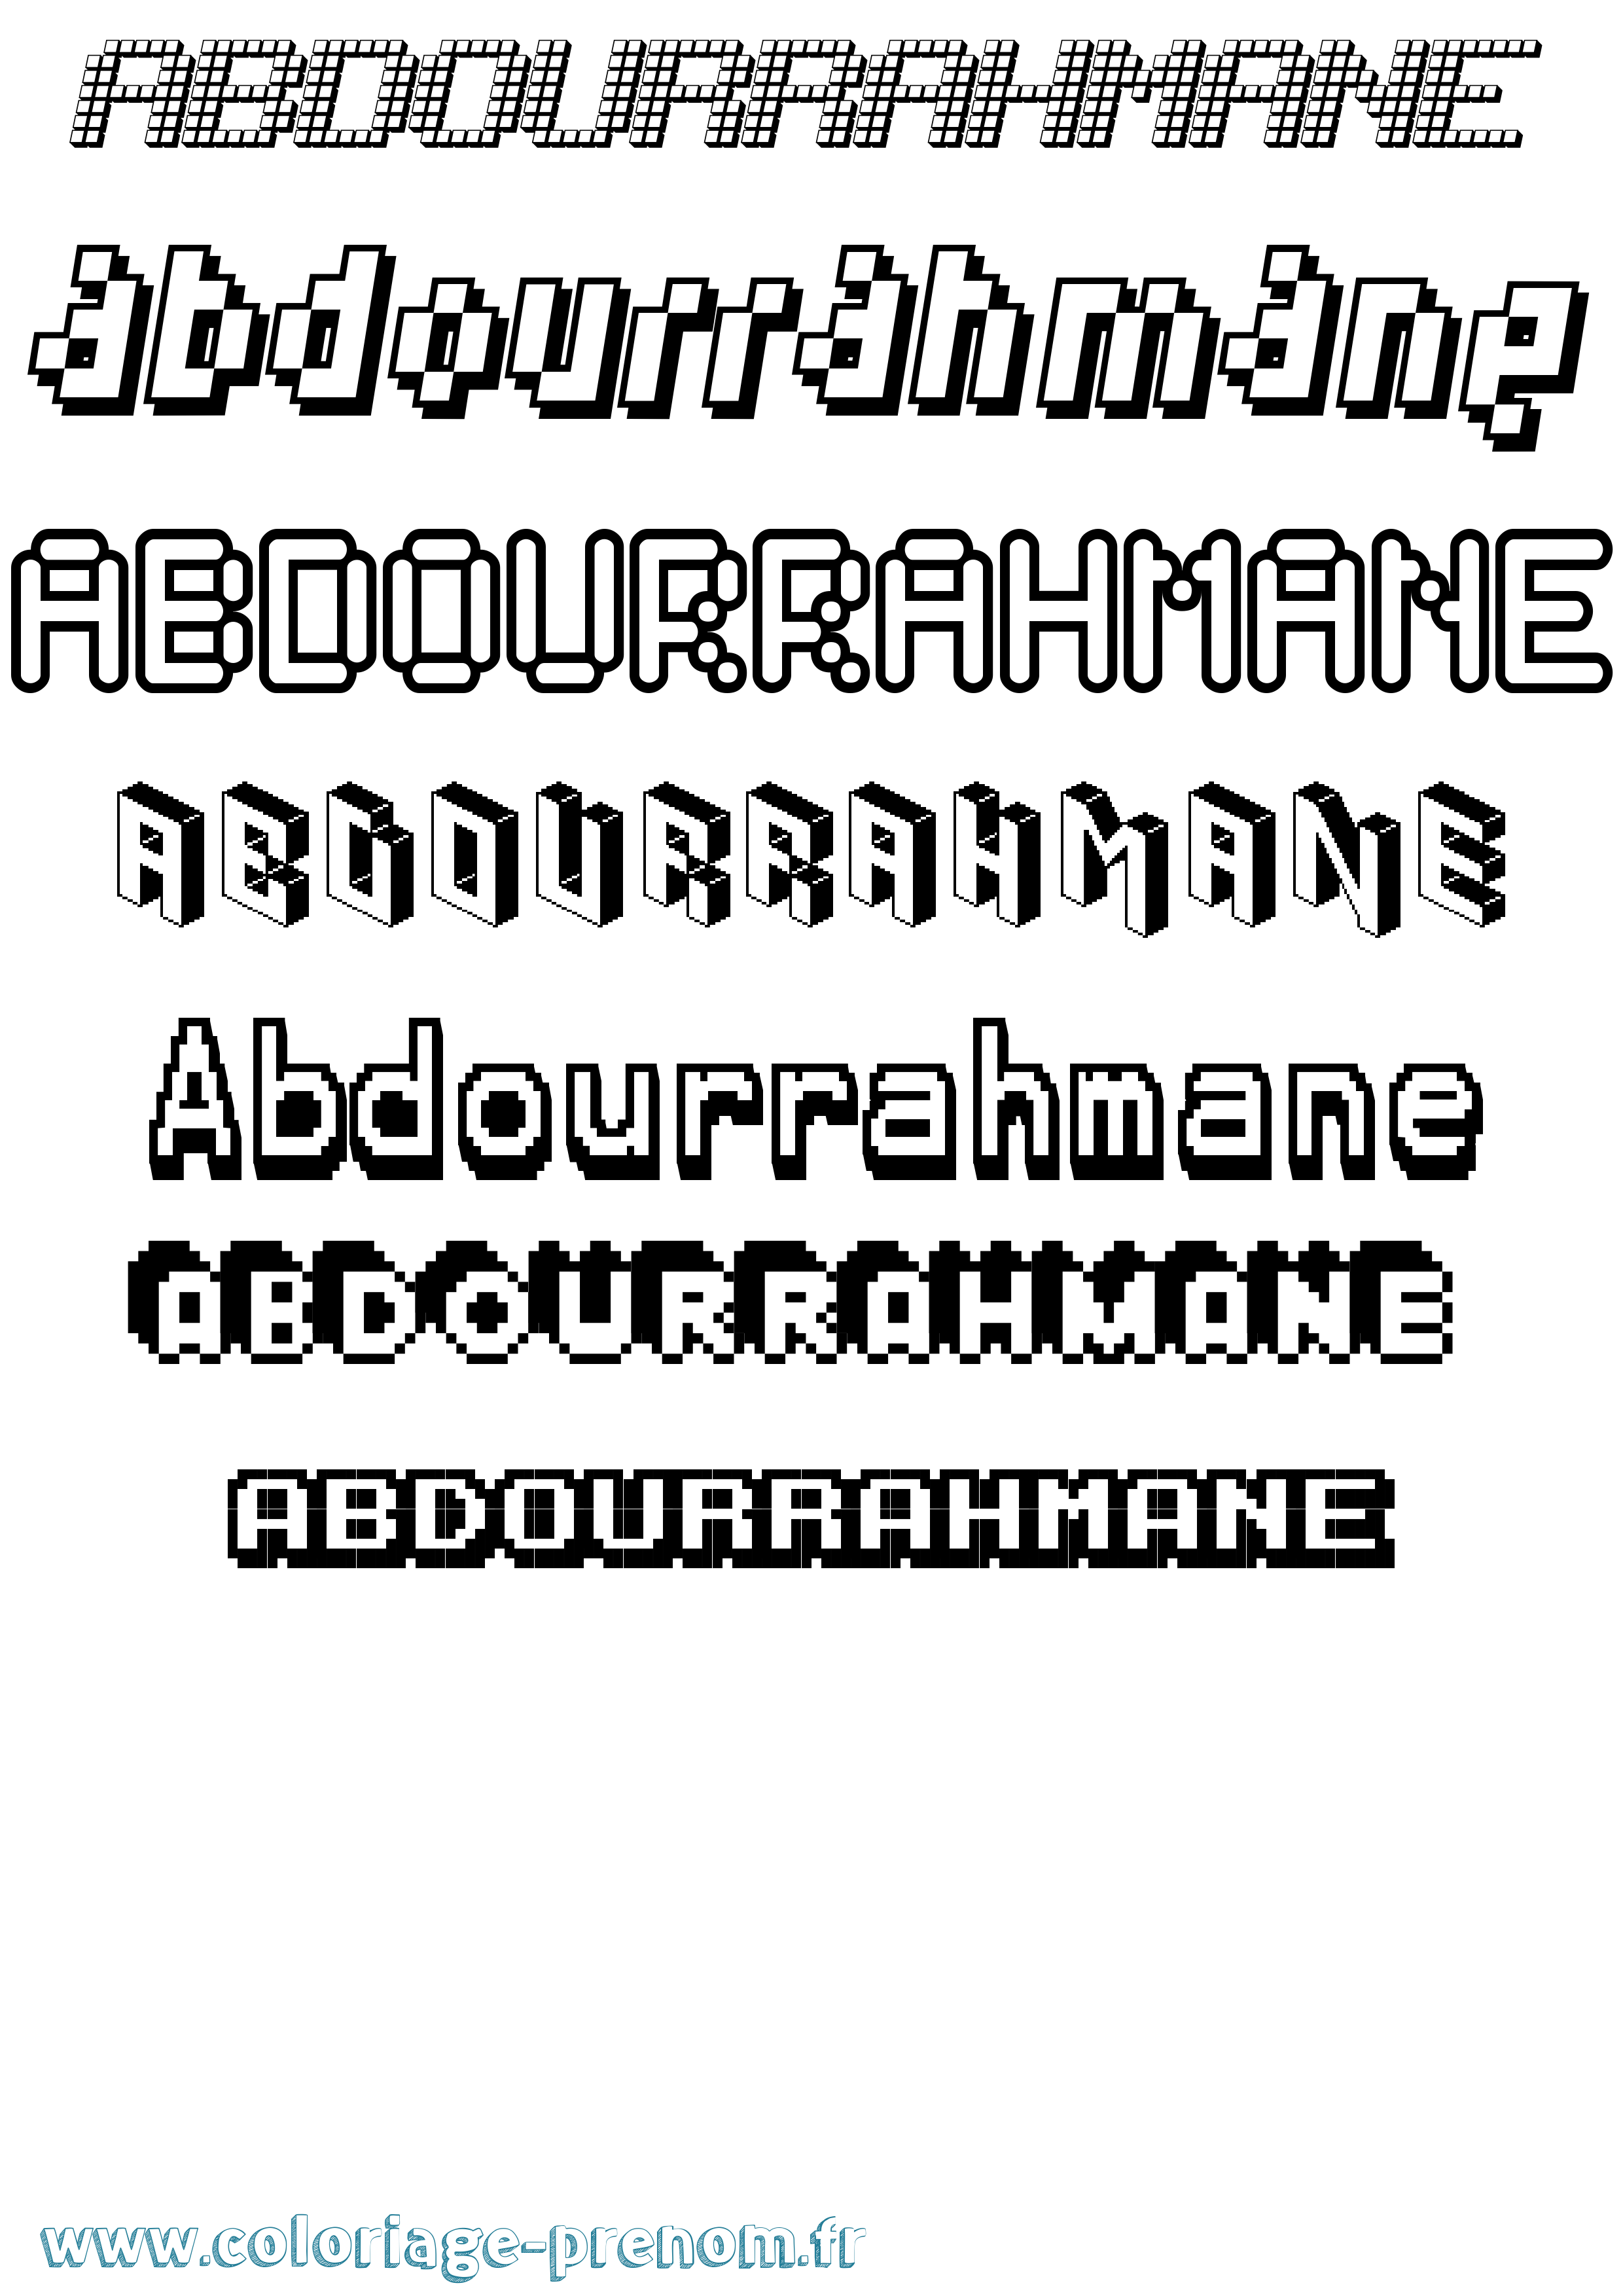 Coloriage prénom Abdourrahmane Pixel